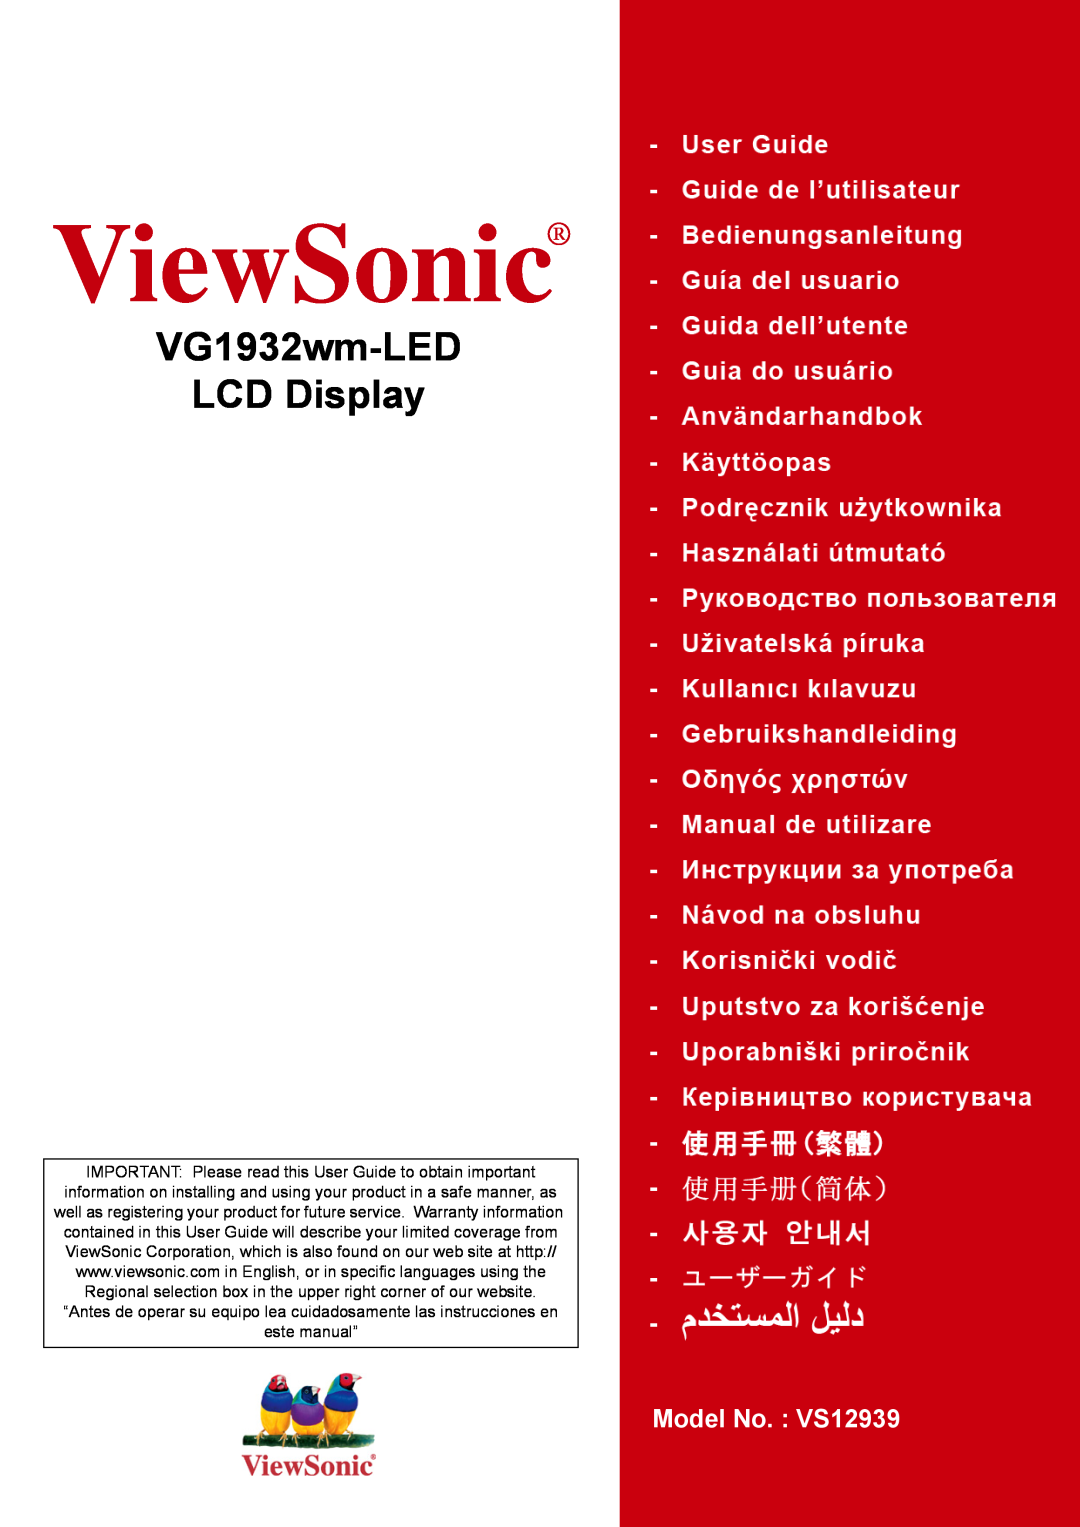 ViewSonic VG1932WM-LED manual ViewSonic, VG1932wm-LED LCD Display, ﻢﺪﺨﺘﺴﻤﻠﺍ ﻞﻴﻠﺪ, 使用手冊繁中 使用手冊 簡中, 사용자 안내서, ユーザーガイド 